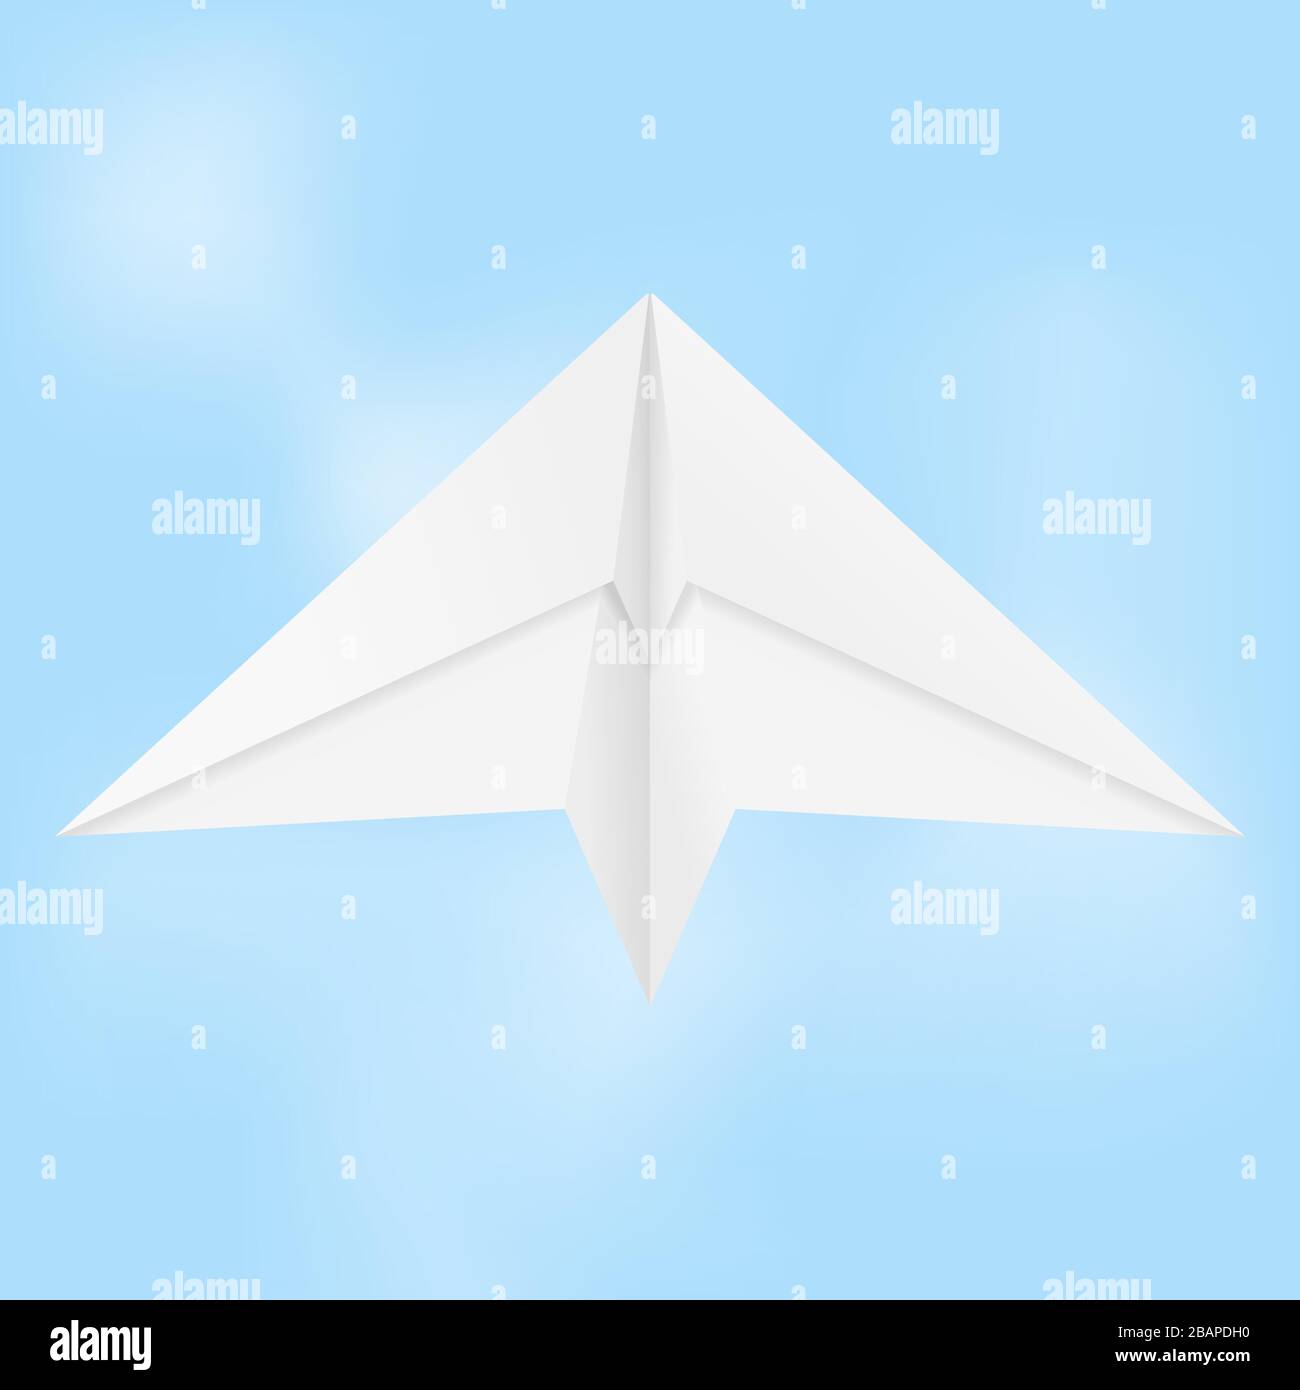 Avion en papier. Patin replié dans le ciel bleu Illustration de Vecteur